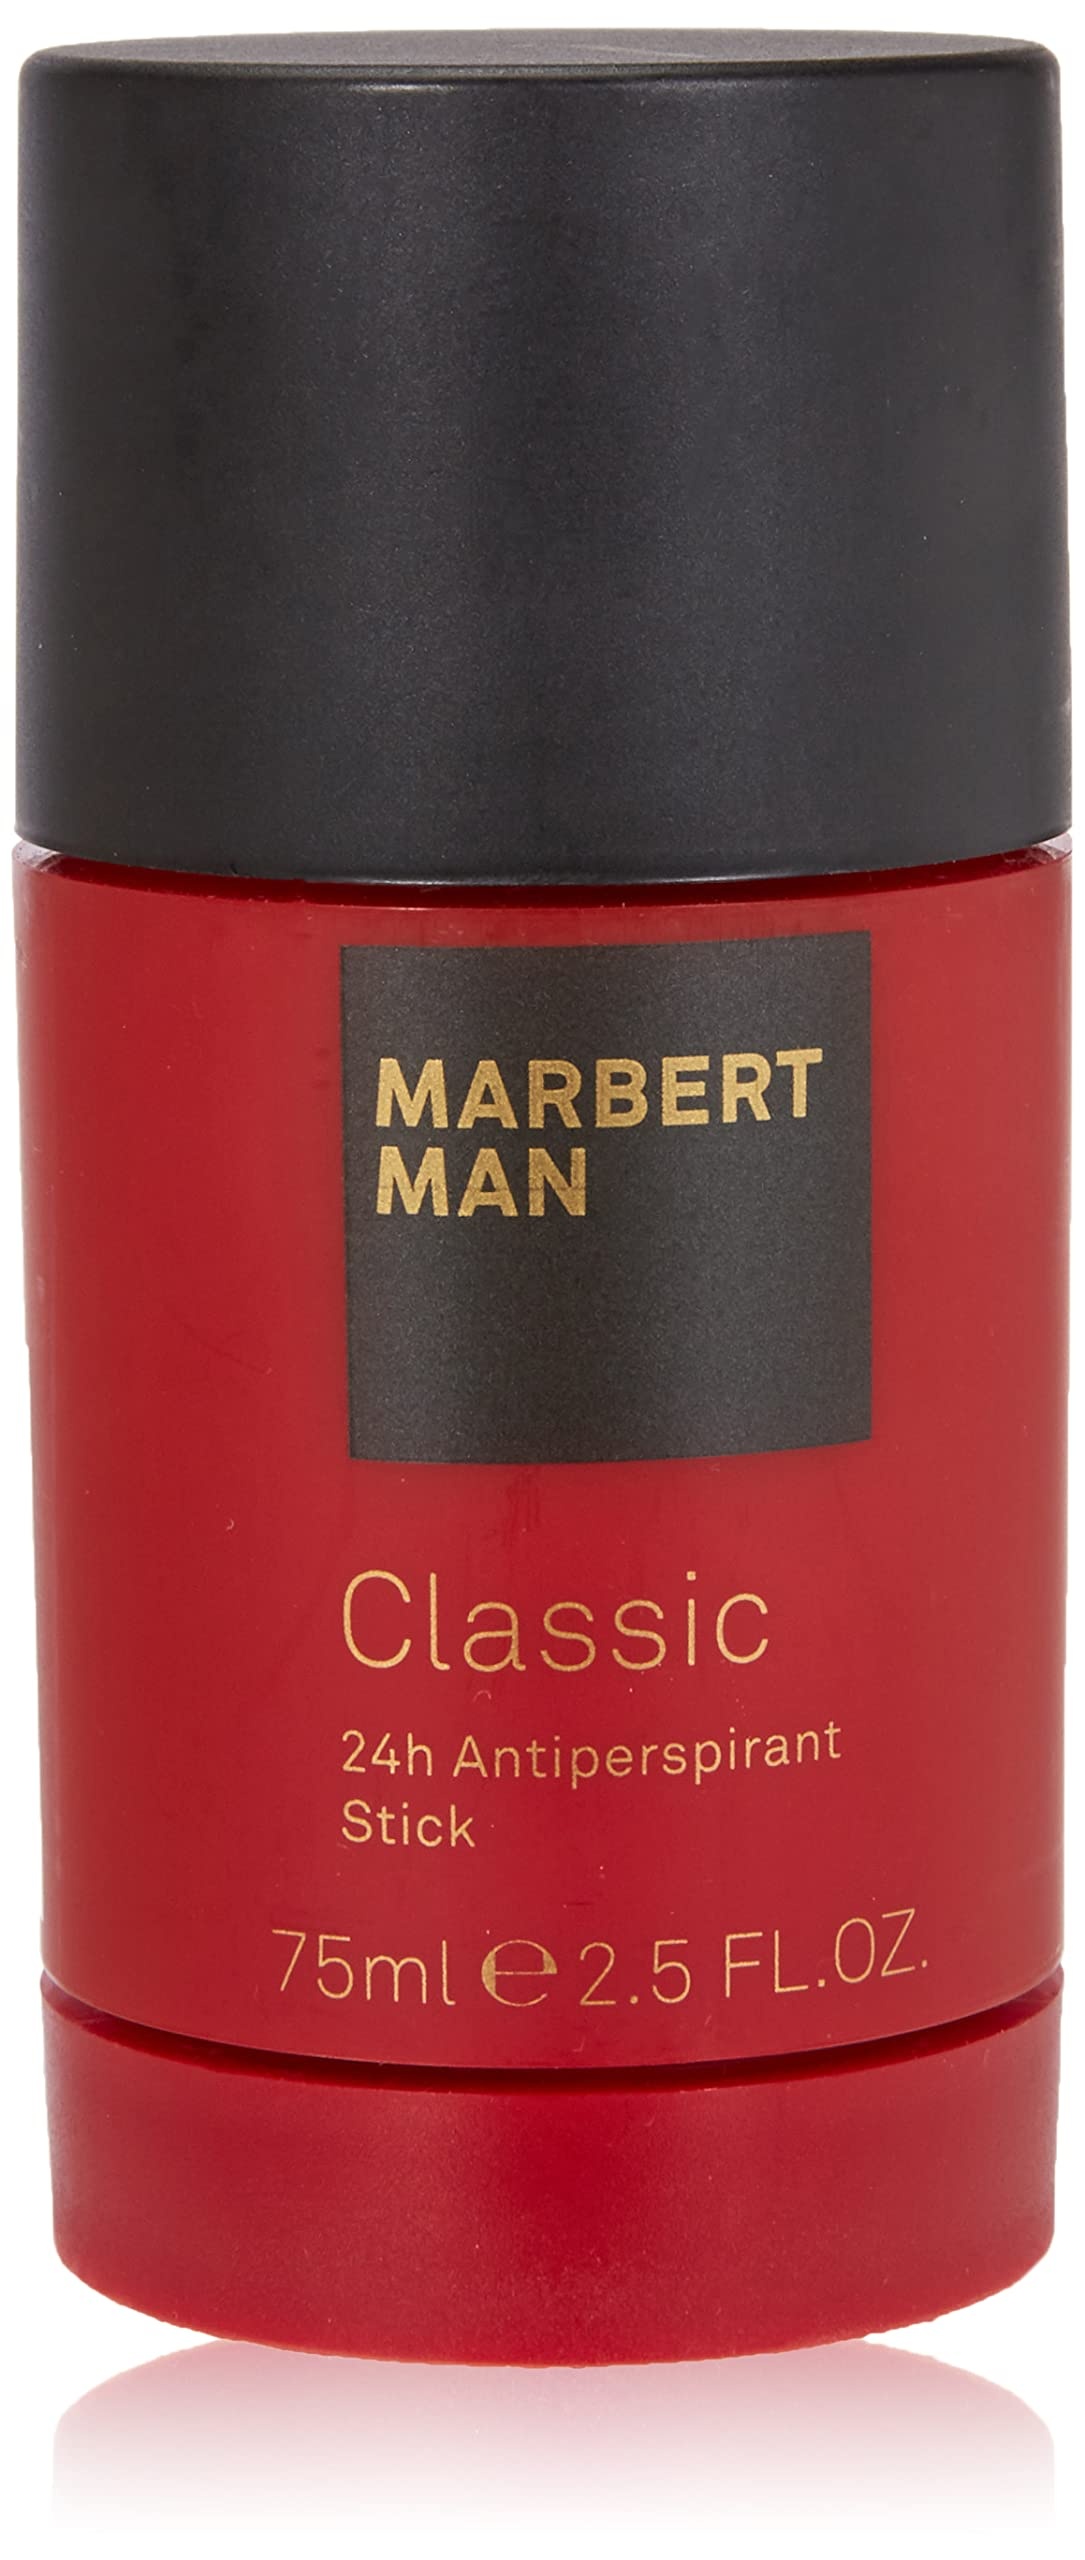 Marbert Classic homme/ man, 24 Hour Antiperspirant Stick, 1er Pack (1 x 75 ml)